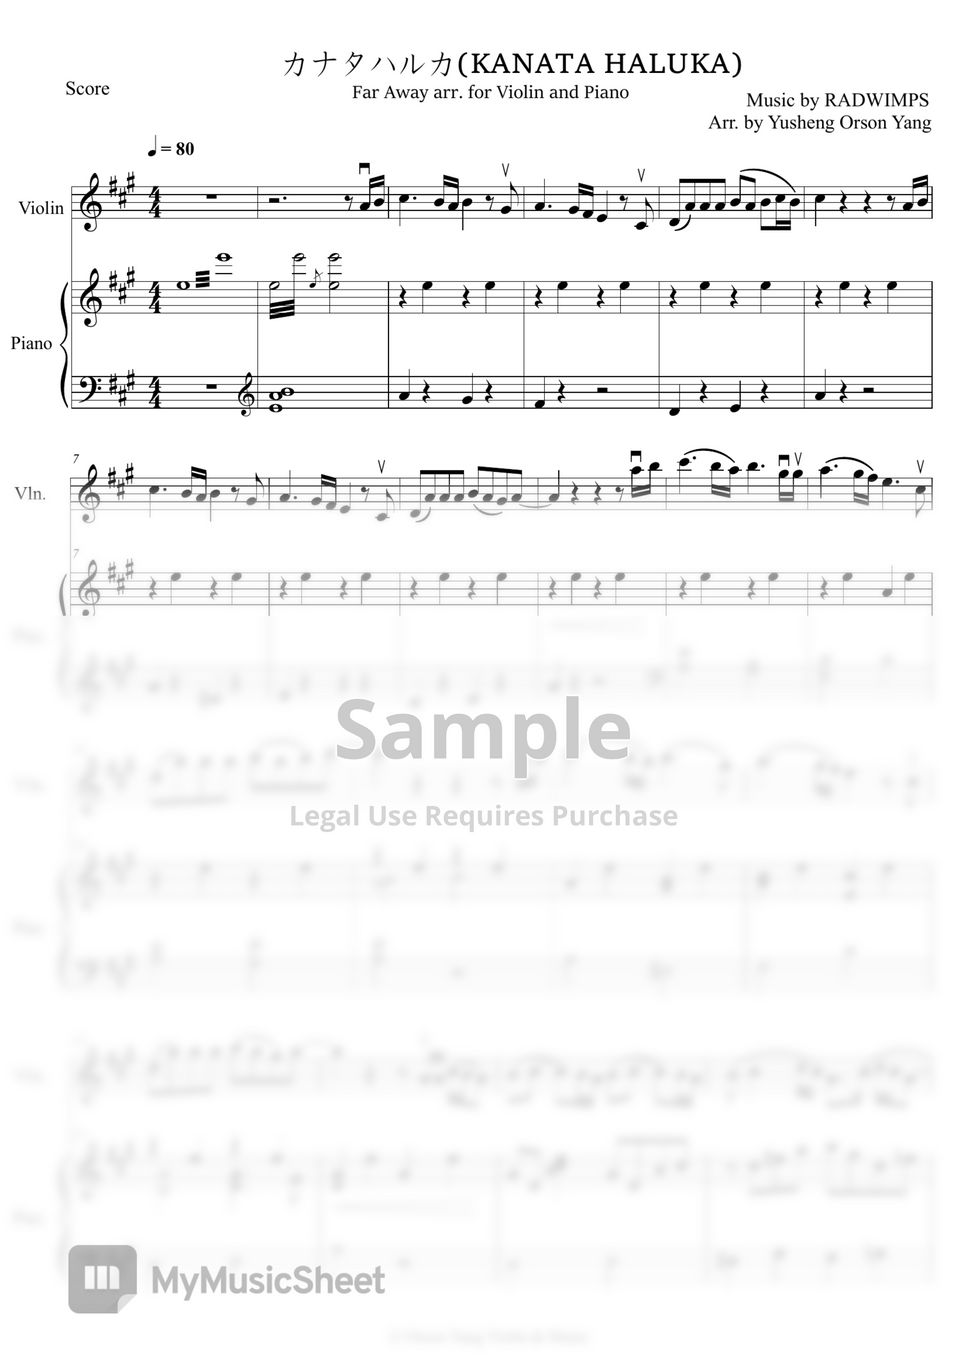 RADWIMPS - カナタハルカ (すずめのとじまり エンディング曲 ヴァイオリンとピアノ編曲) by ヤン・ユシェン